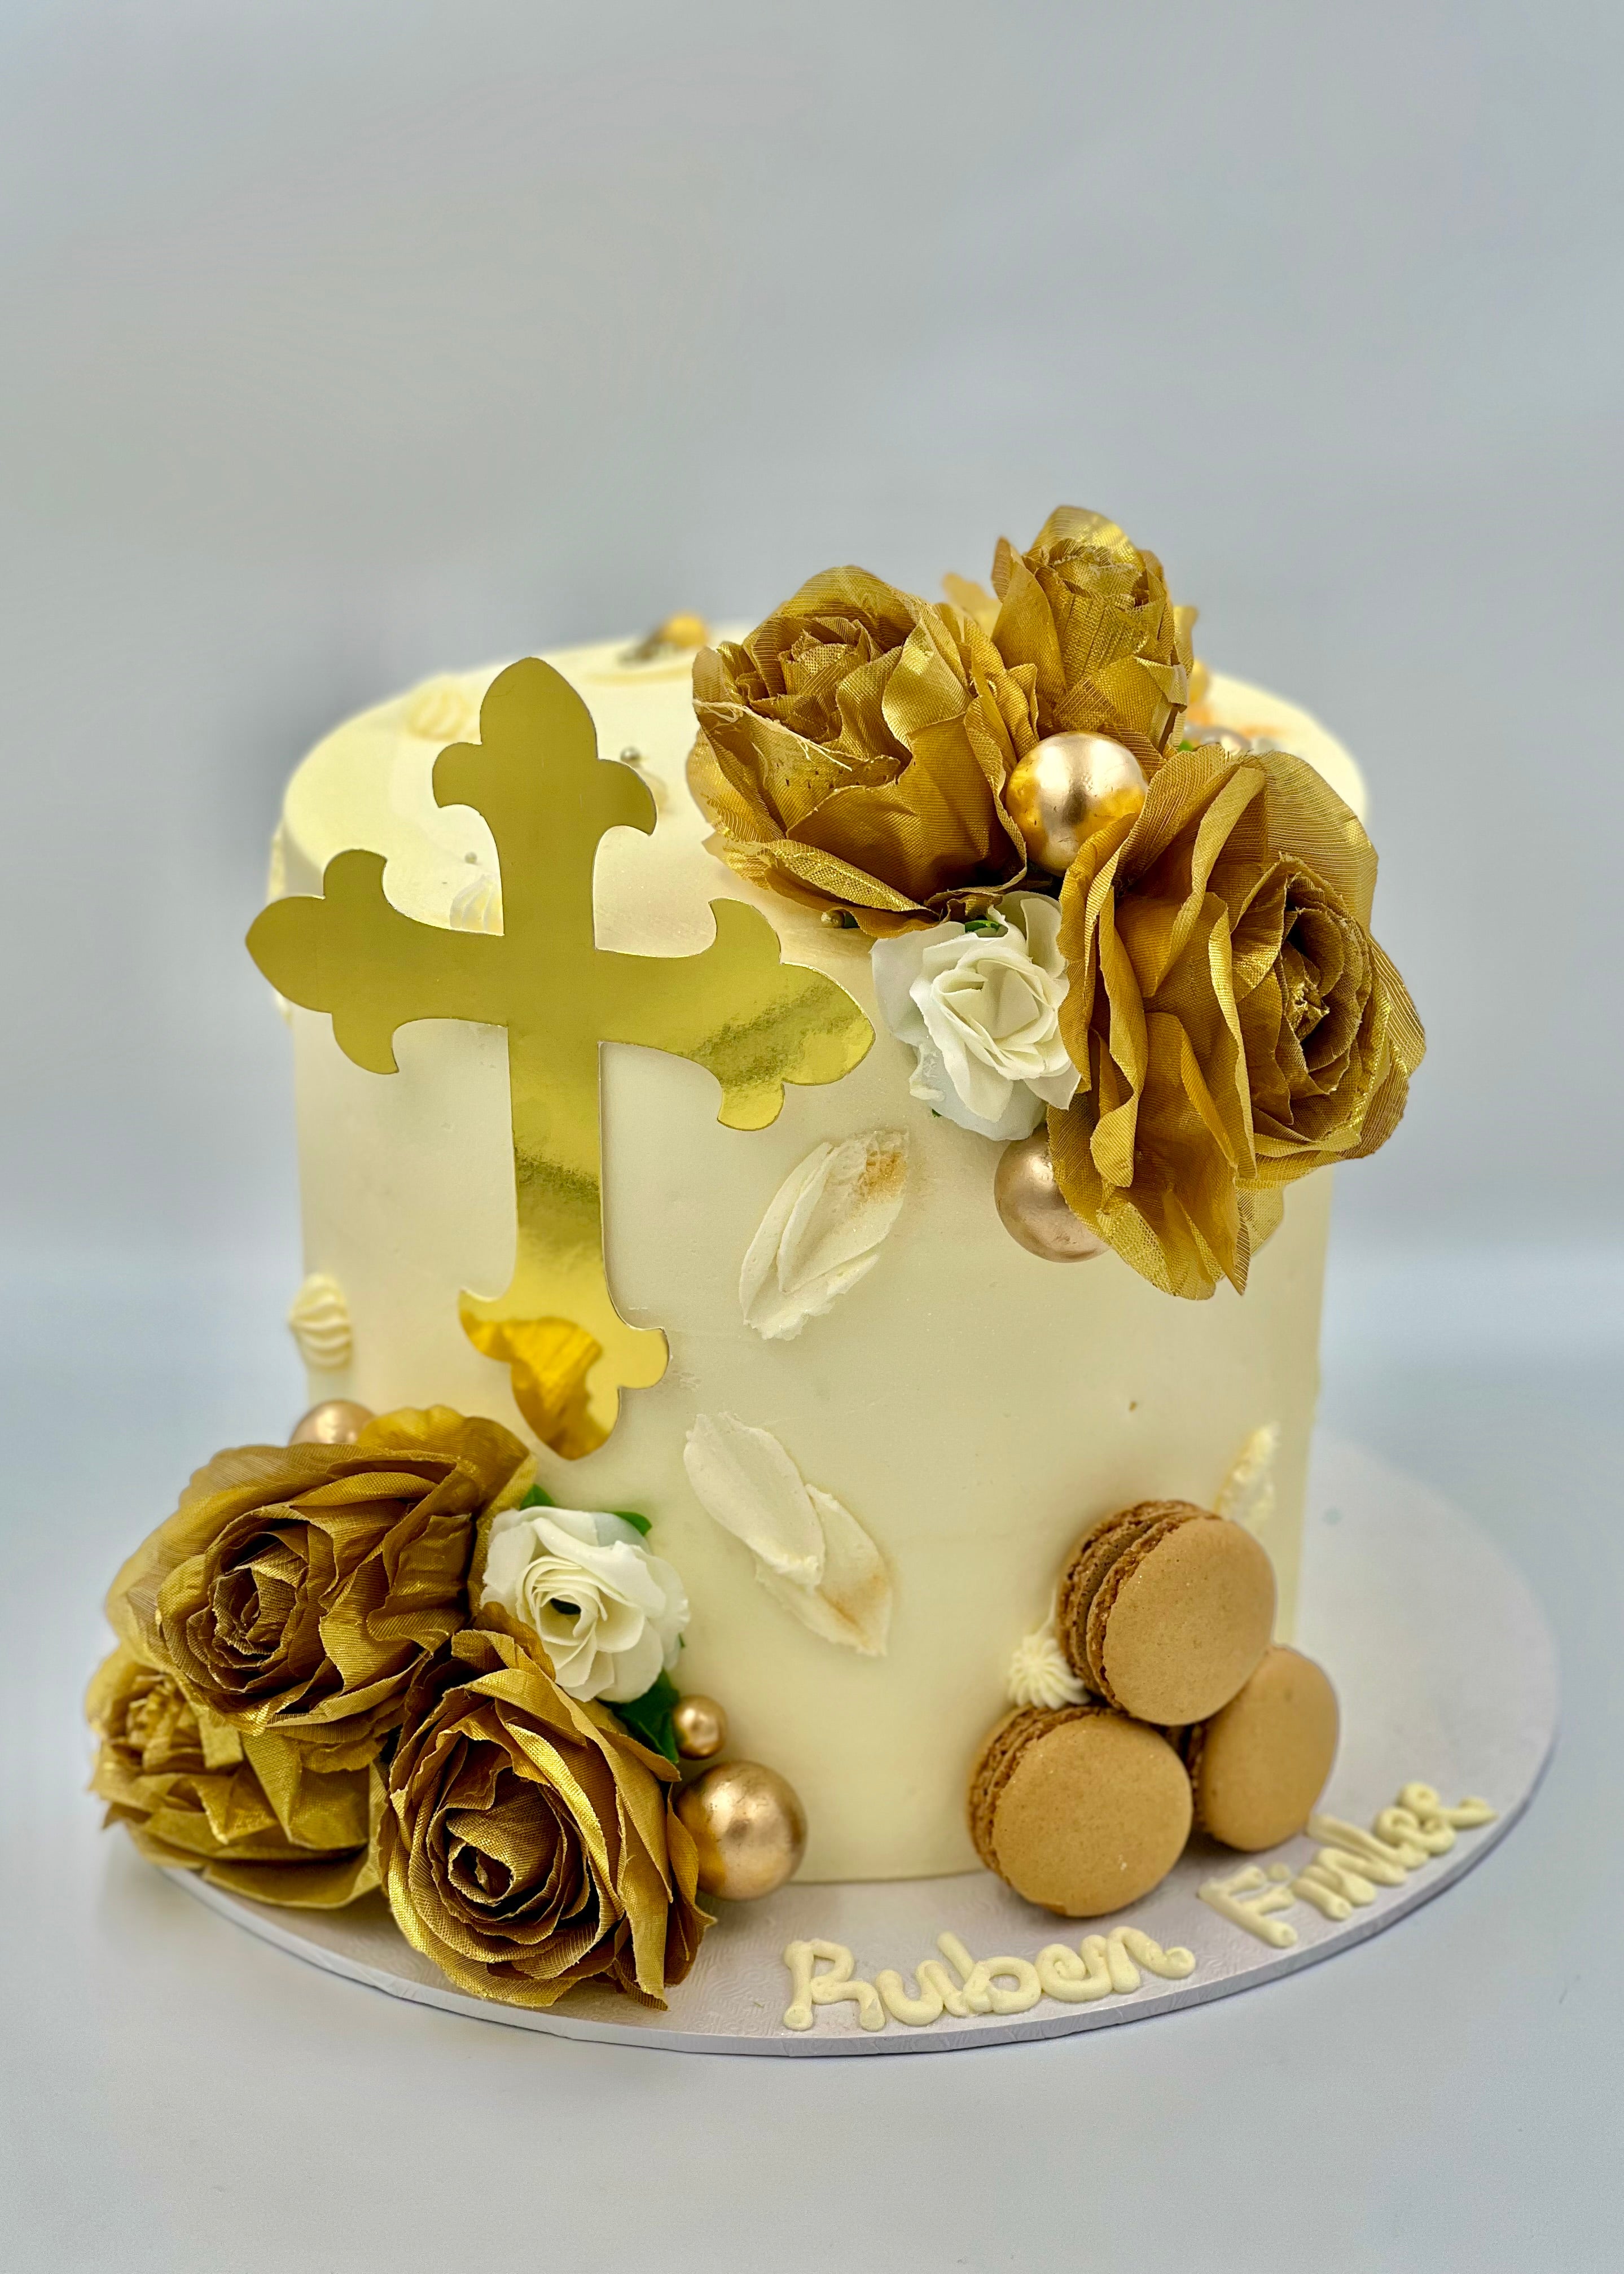 Blue and white christening cake - Decorated Cake by Kake - CakesDecor